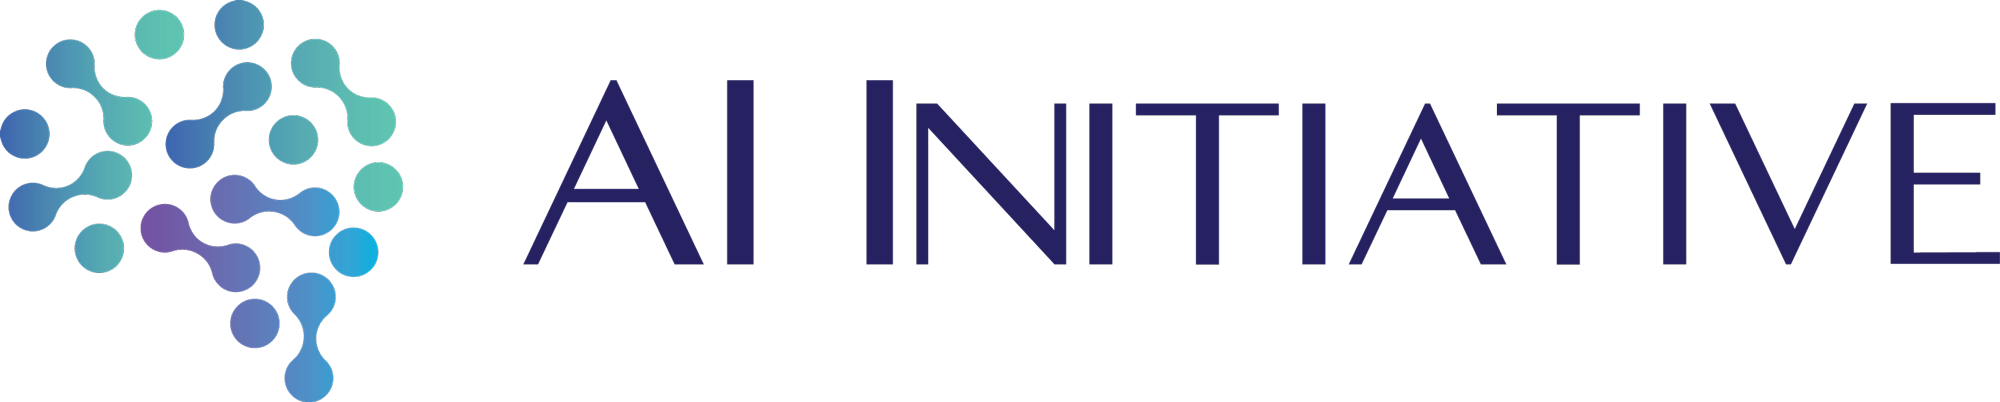 Ai Initiative Logo Fullcolor